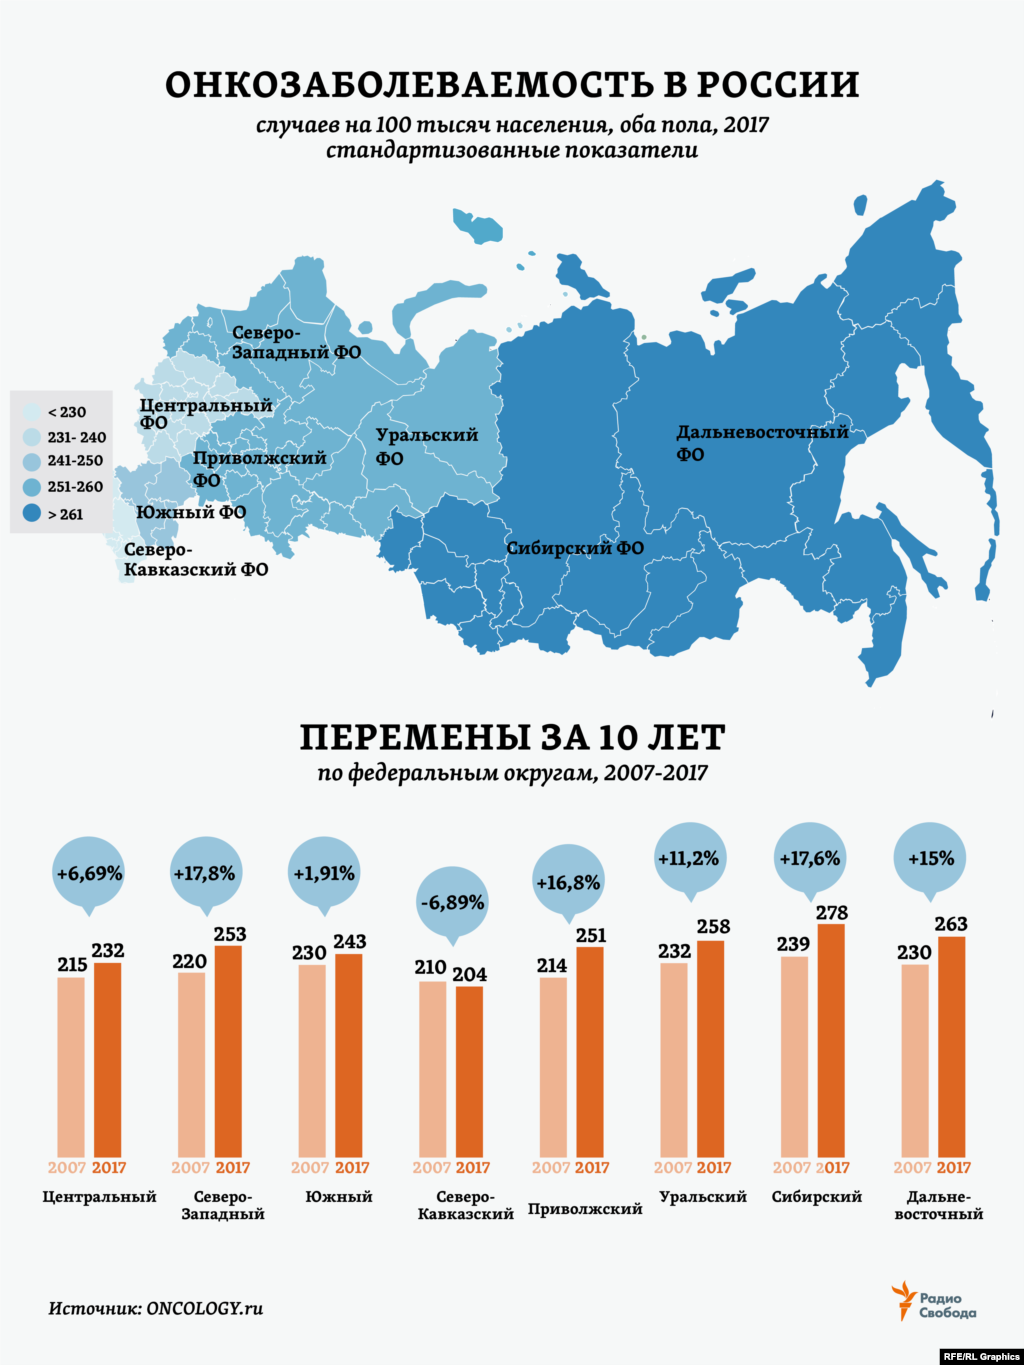 В России в 2017 году, по данным портала Oncology.ru, новых случаев злокачественных новообразований было зарегистрировано на 3% больше, чем годом ранее (и на 27% больше, чем было в 2007 году). А в целом на учете в онкологических учреждениях к началу 2018 года состояли 3,63 млн человек &ndash; это почти 2,5% общей численности населения страны. Еще на 1-ой стадии эти новообразования были выявлены в 29,8% случаев, на 2-ой стадии - 25,8%, на 3-ей &ndash; 18,8%, на 4-ой &ndash; 20,2%.